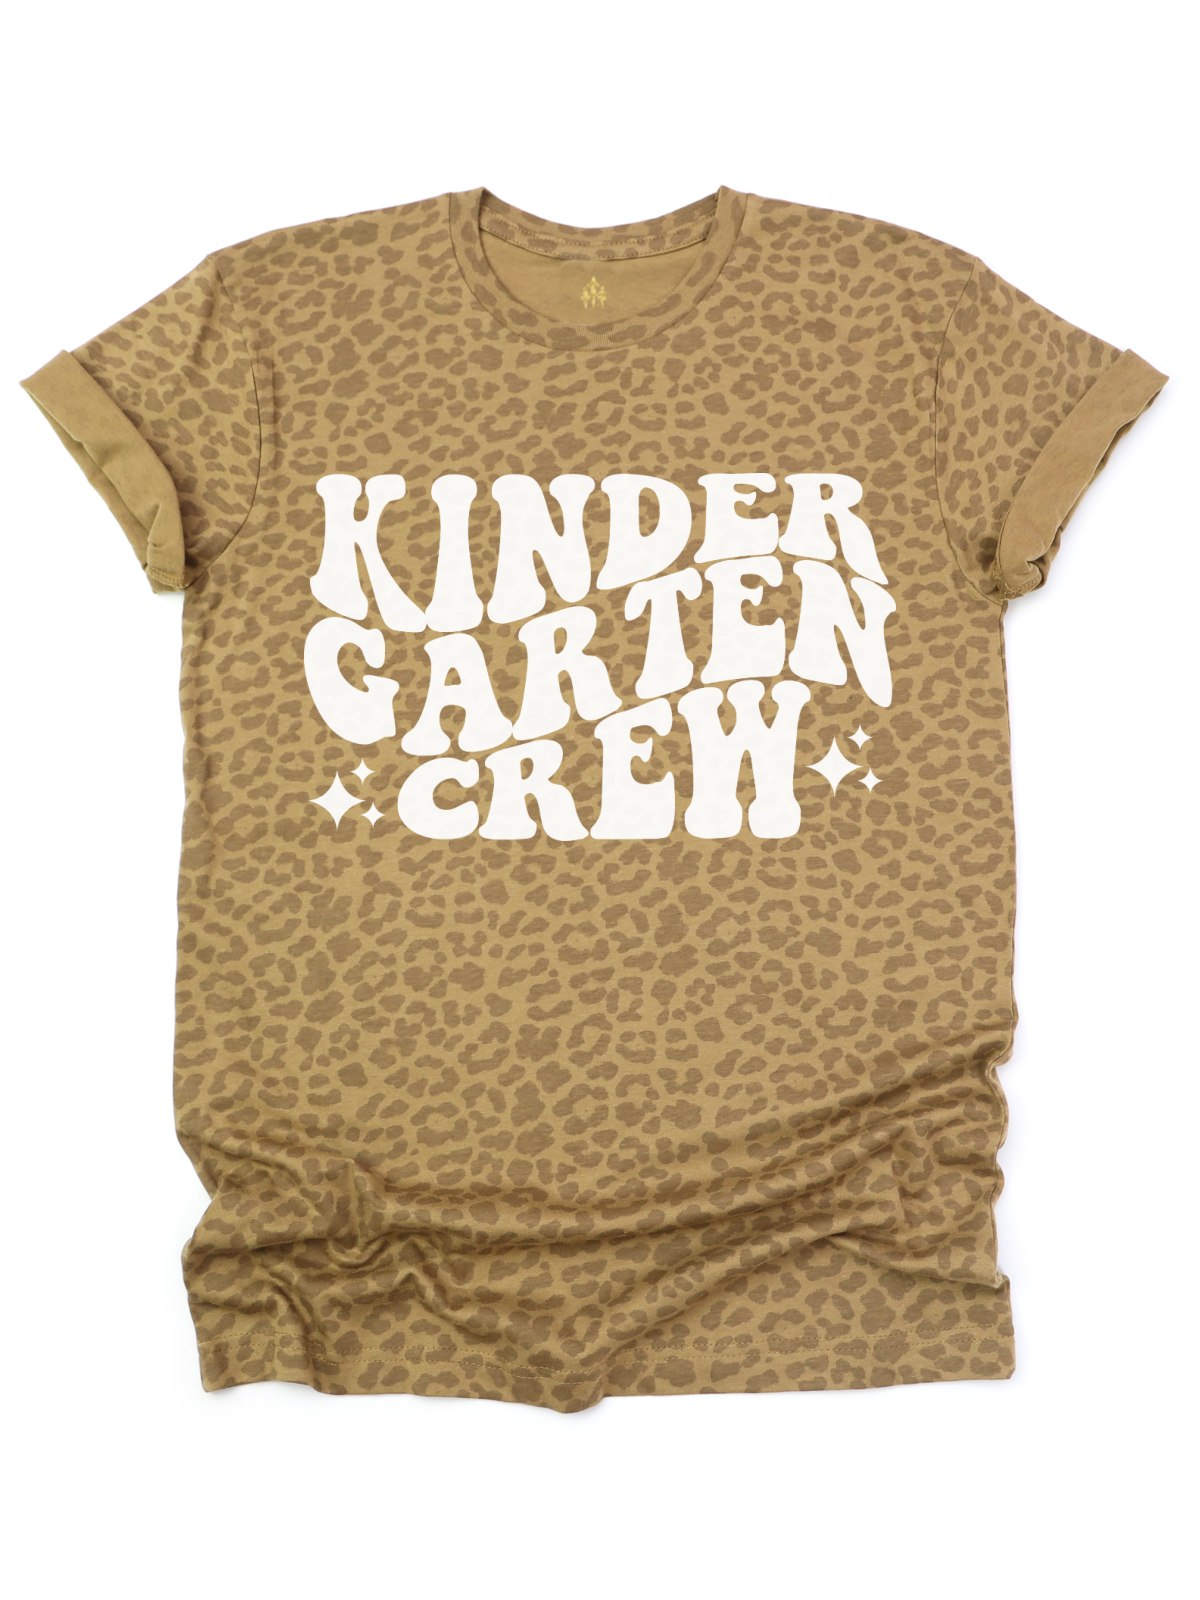 Kindergarten Crew Teacher Shirt Leopard Print